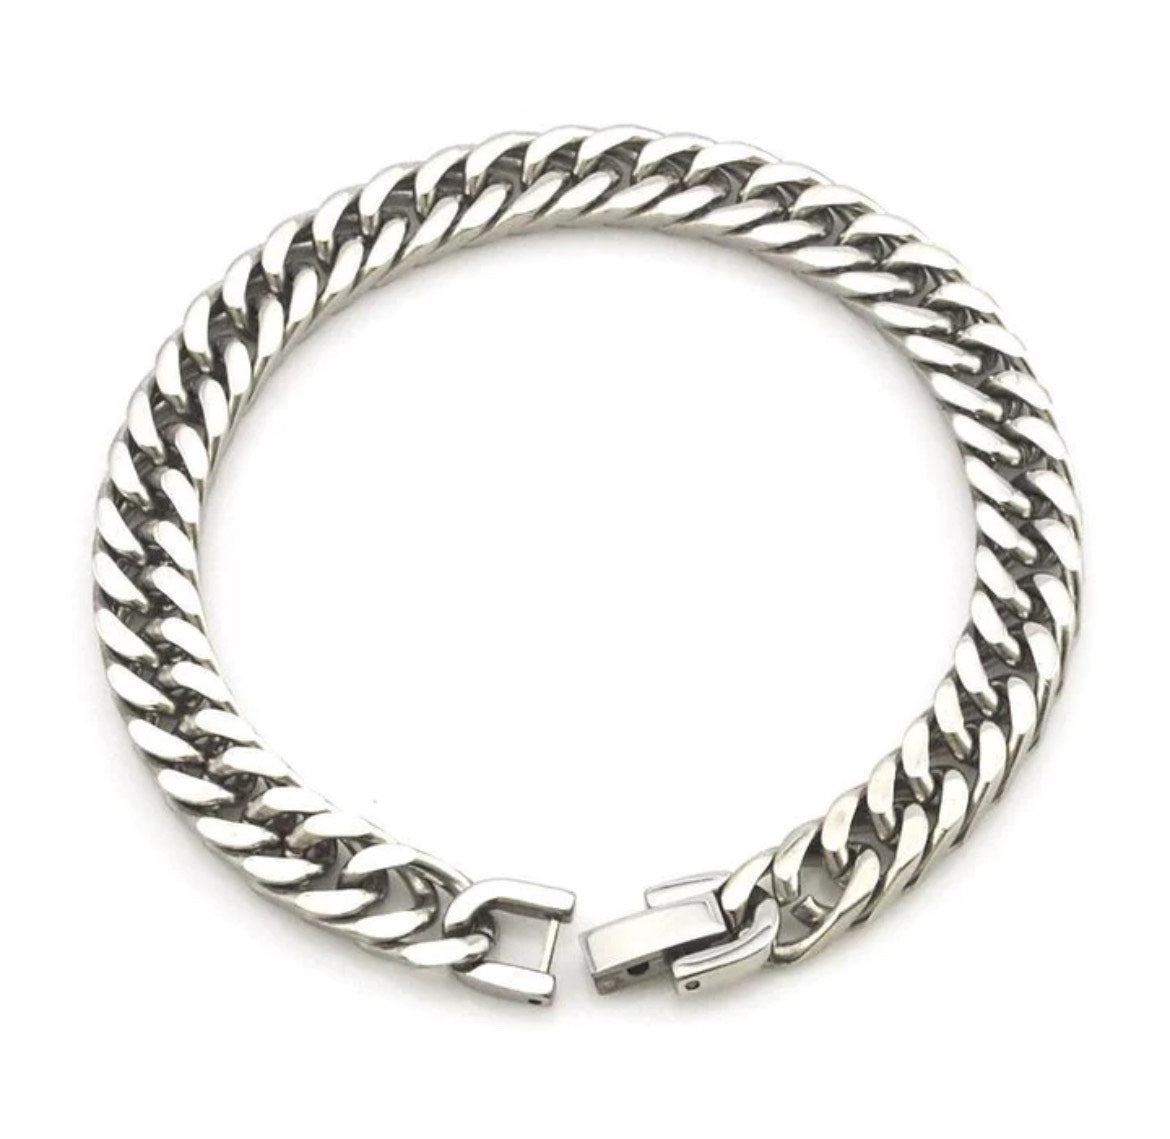 Silver Chromic Stainless Steel Bracelet